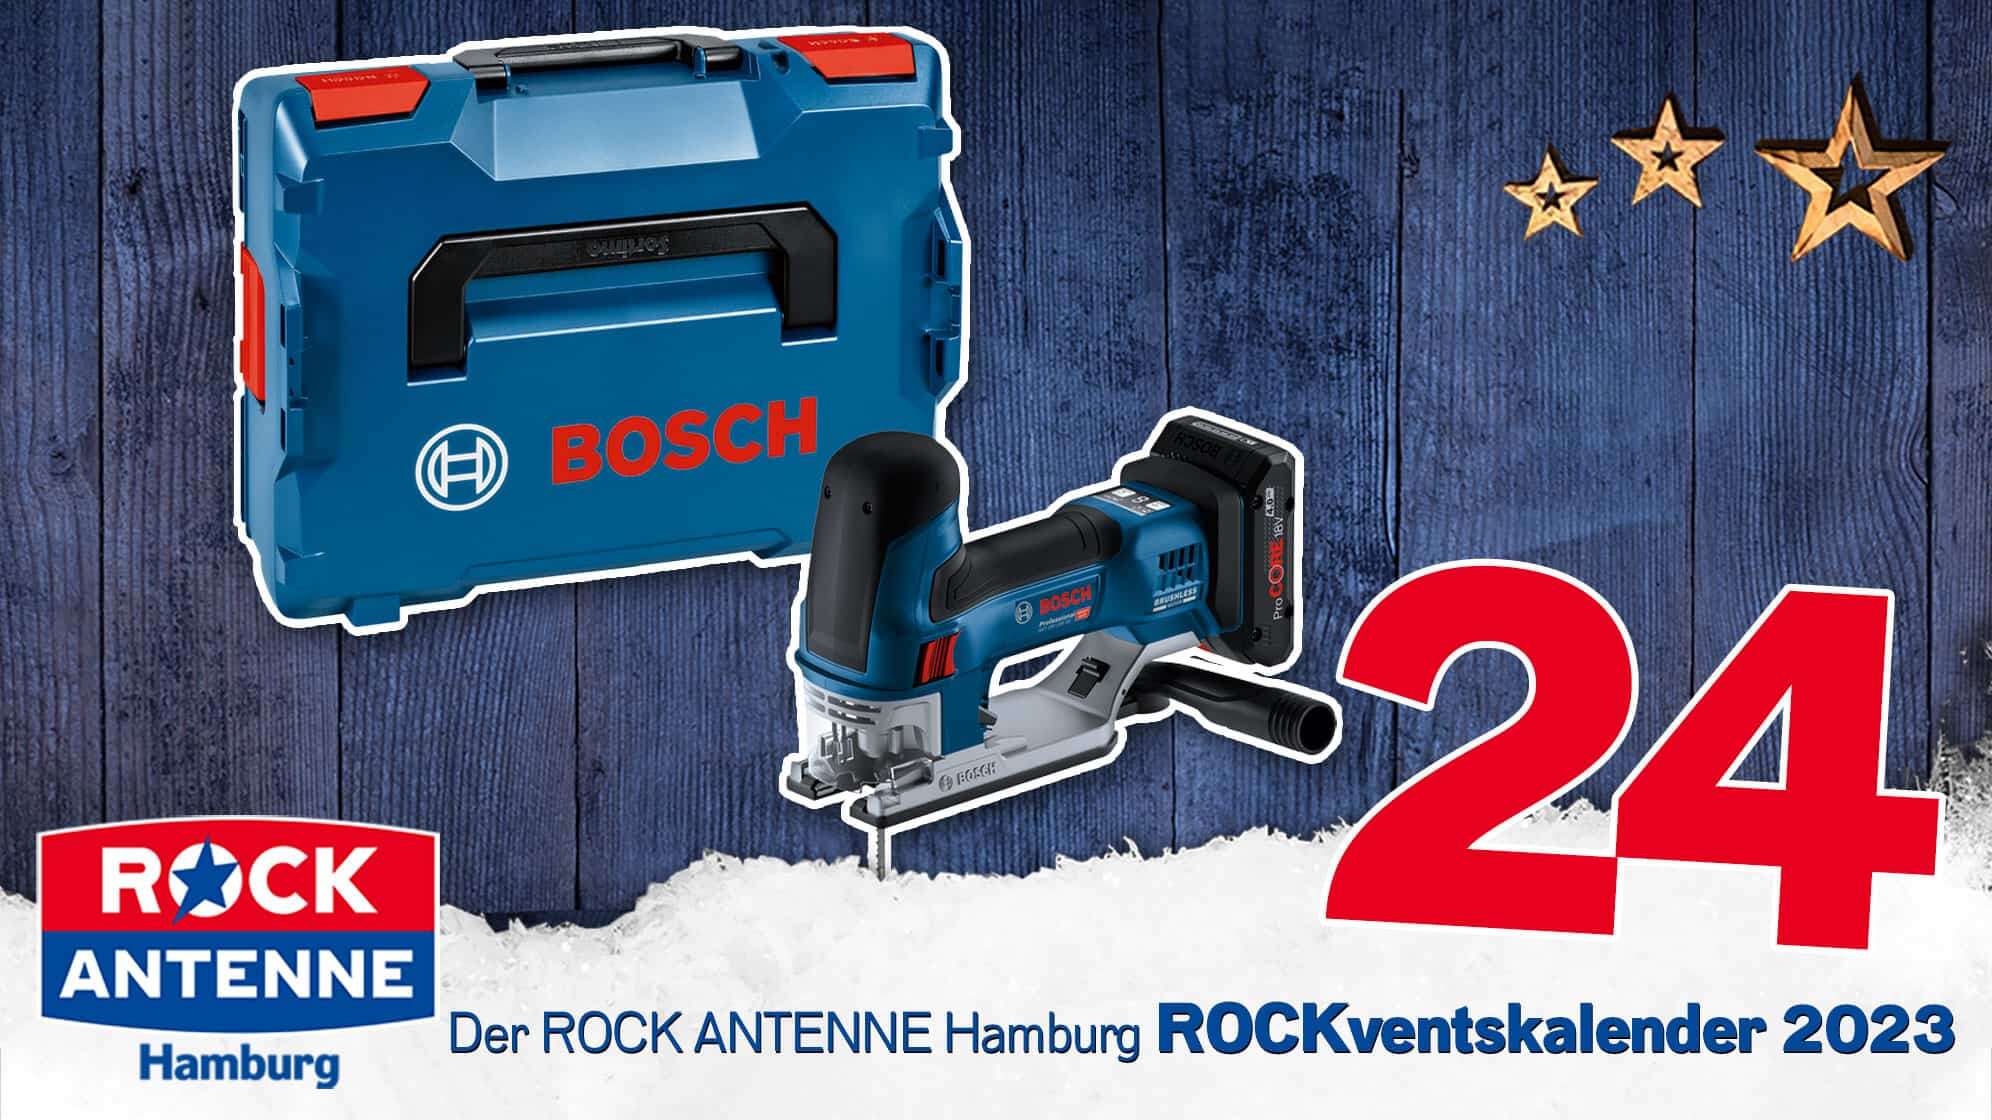 ROCK ANTENNE Hamburg ROCKventskalender Türchen 24: BOSCH Professional Werkzeugpaket mit Akku-Stichsäge